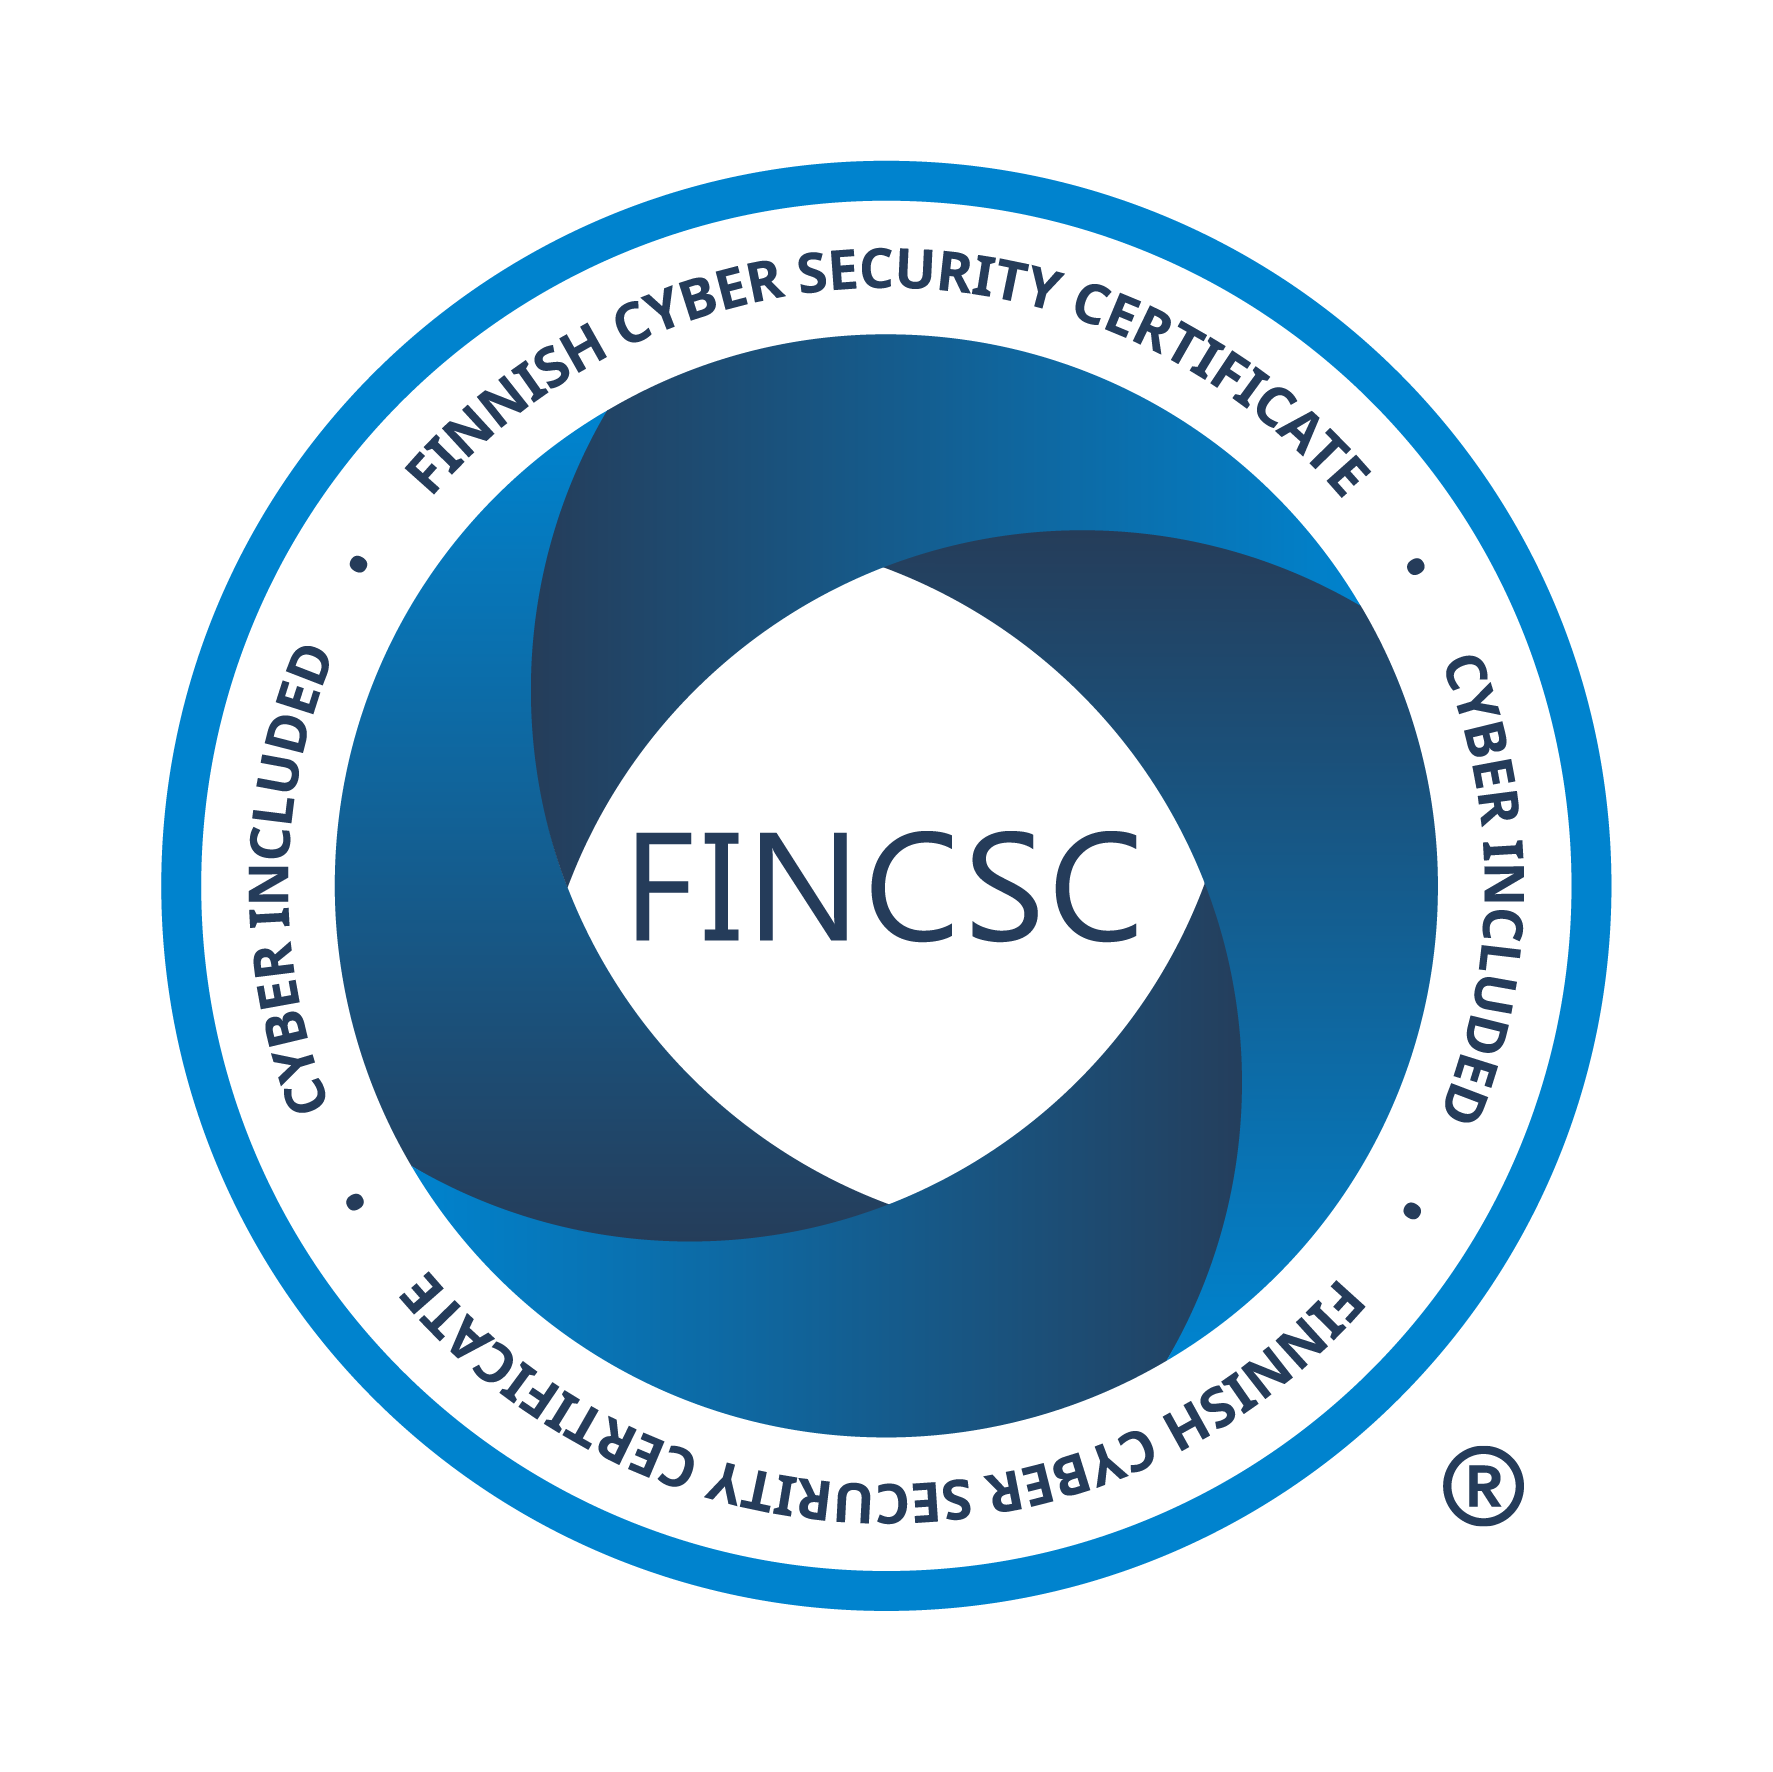 FINCSC - Finnish Cyber Security Certificacation - sertifikaattimerkki